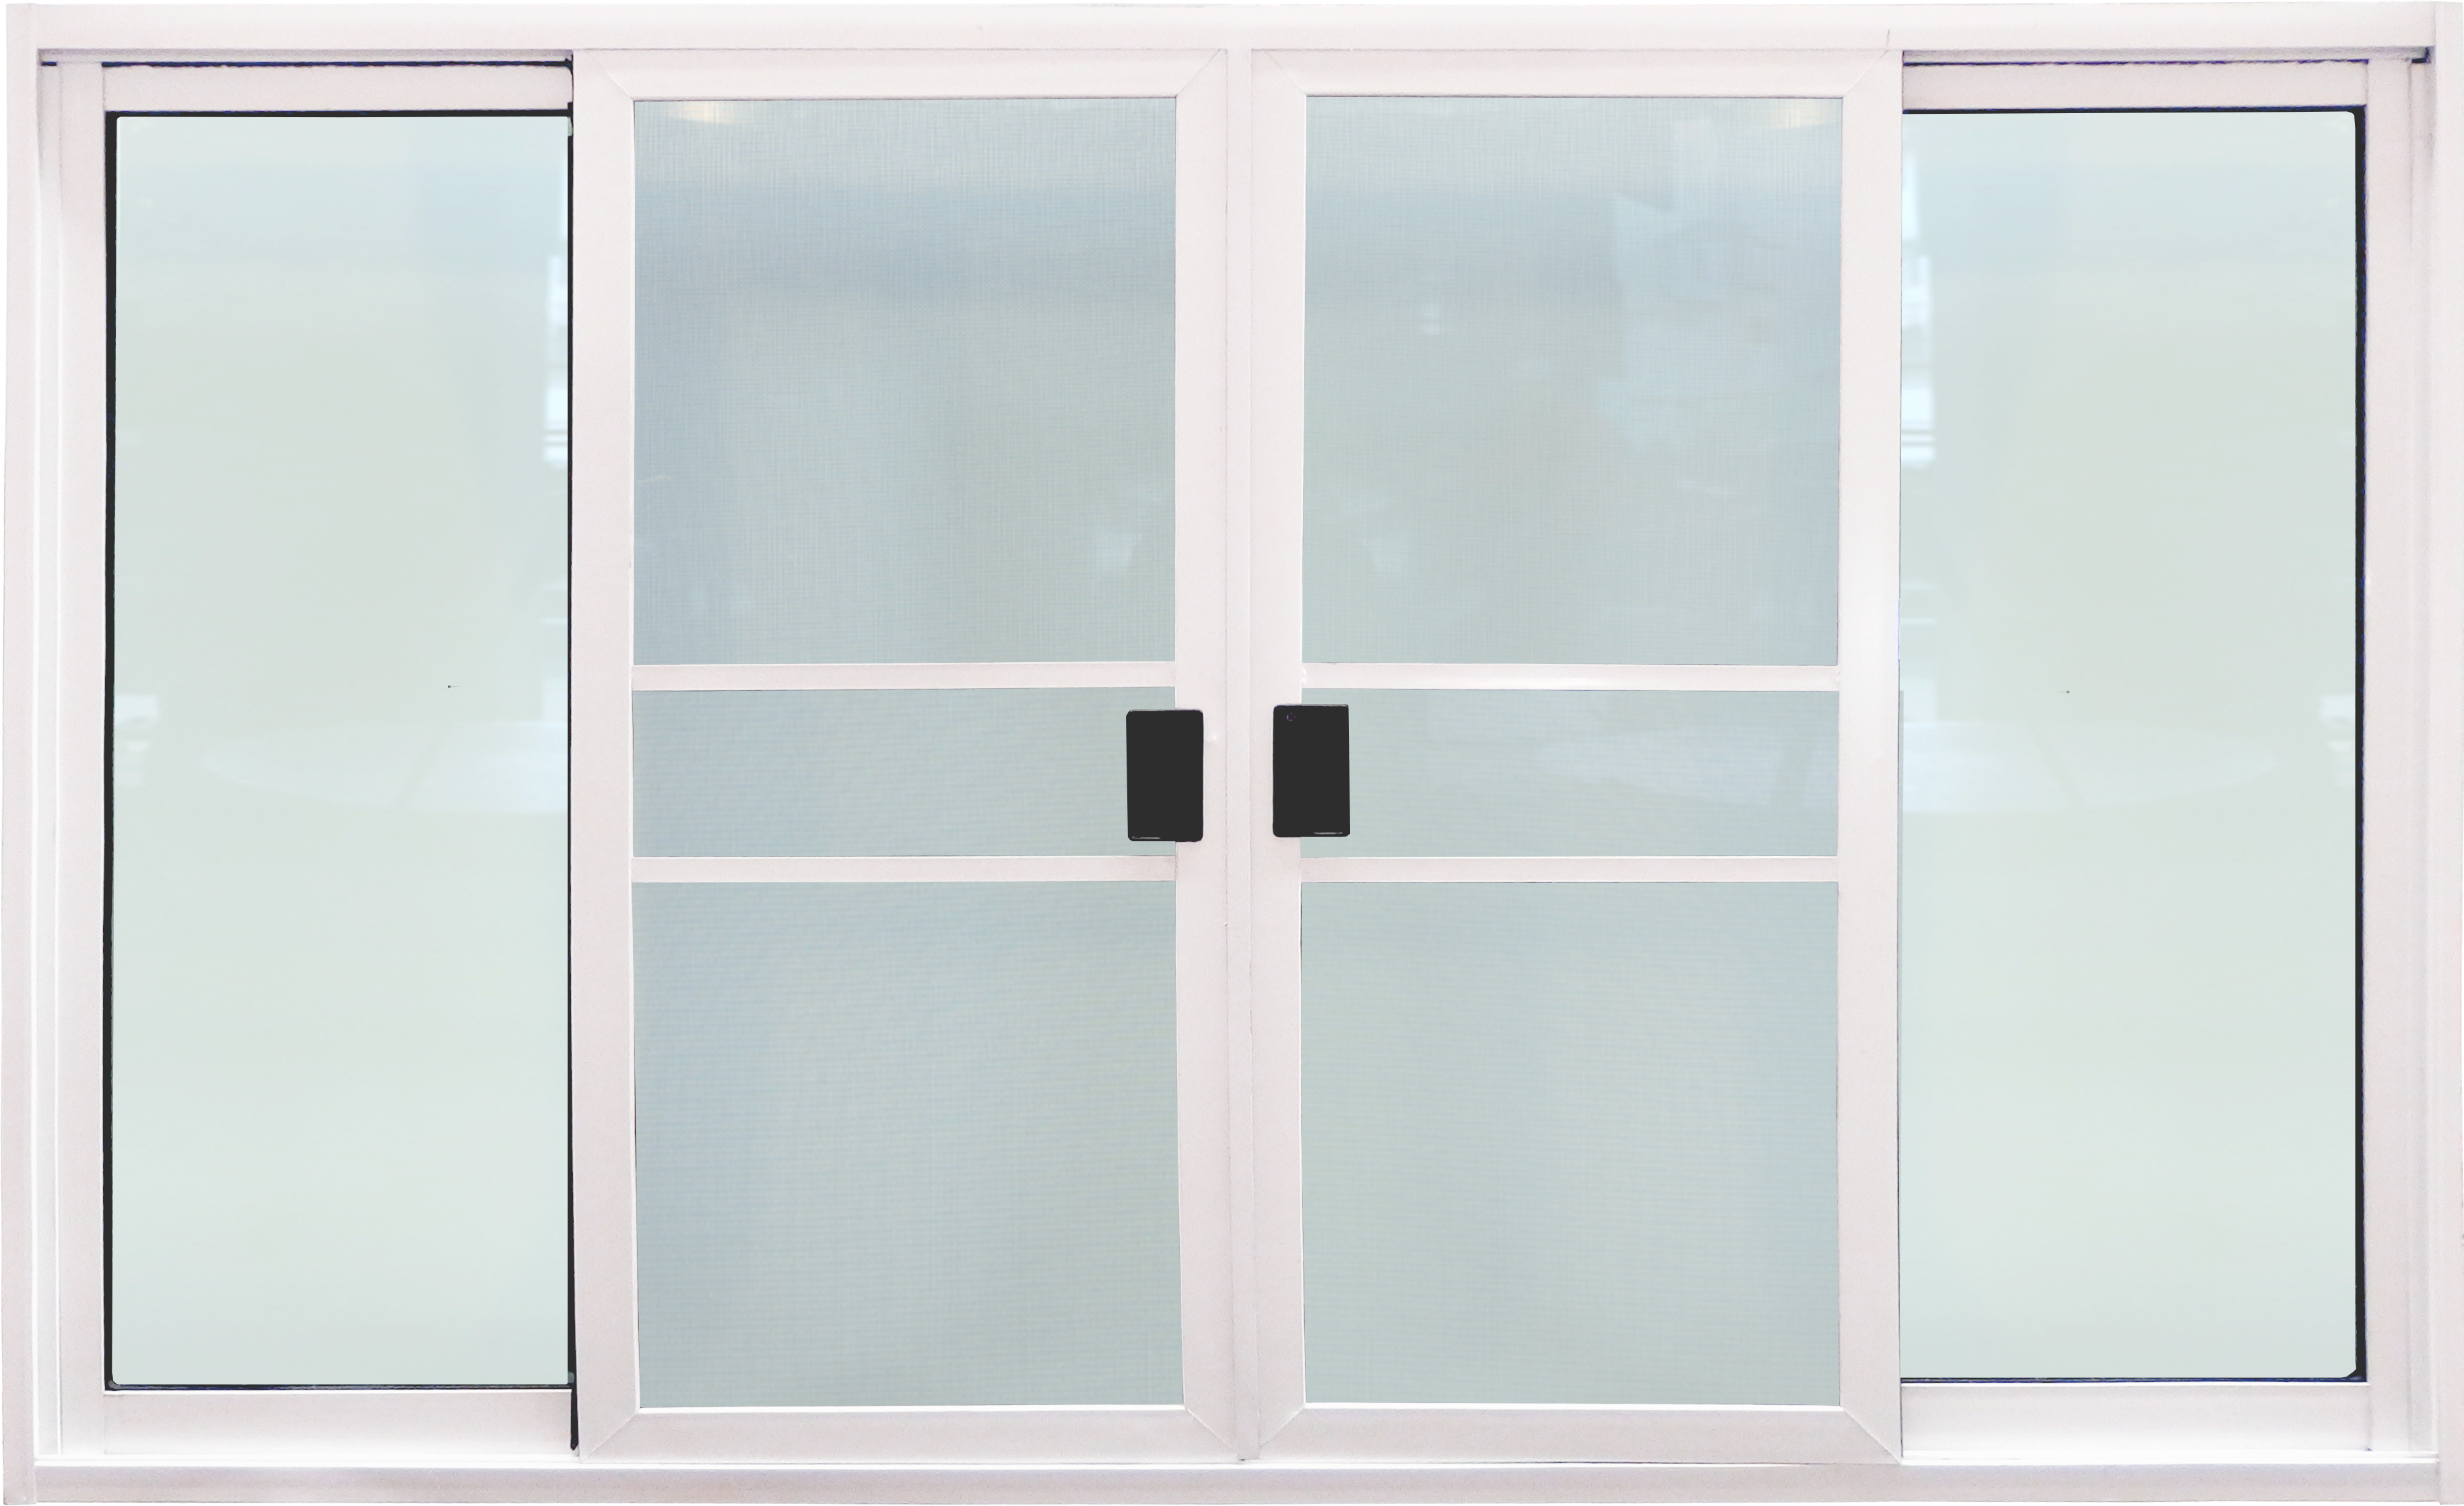 หน้าต่างบานเลื่อน 3ช่อง อลูมิเนียมสีอบขาว+กระจกใสเขียว+มุ้ง 180ซม.*110ซม.